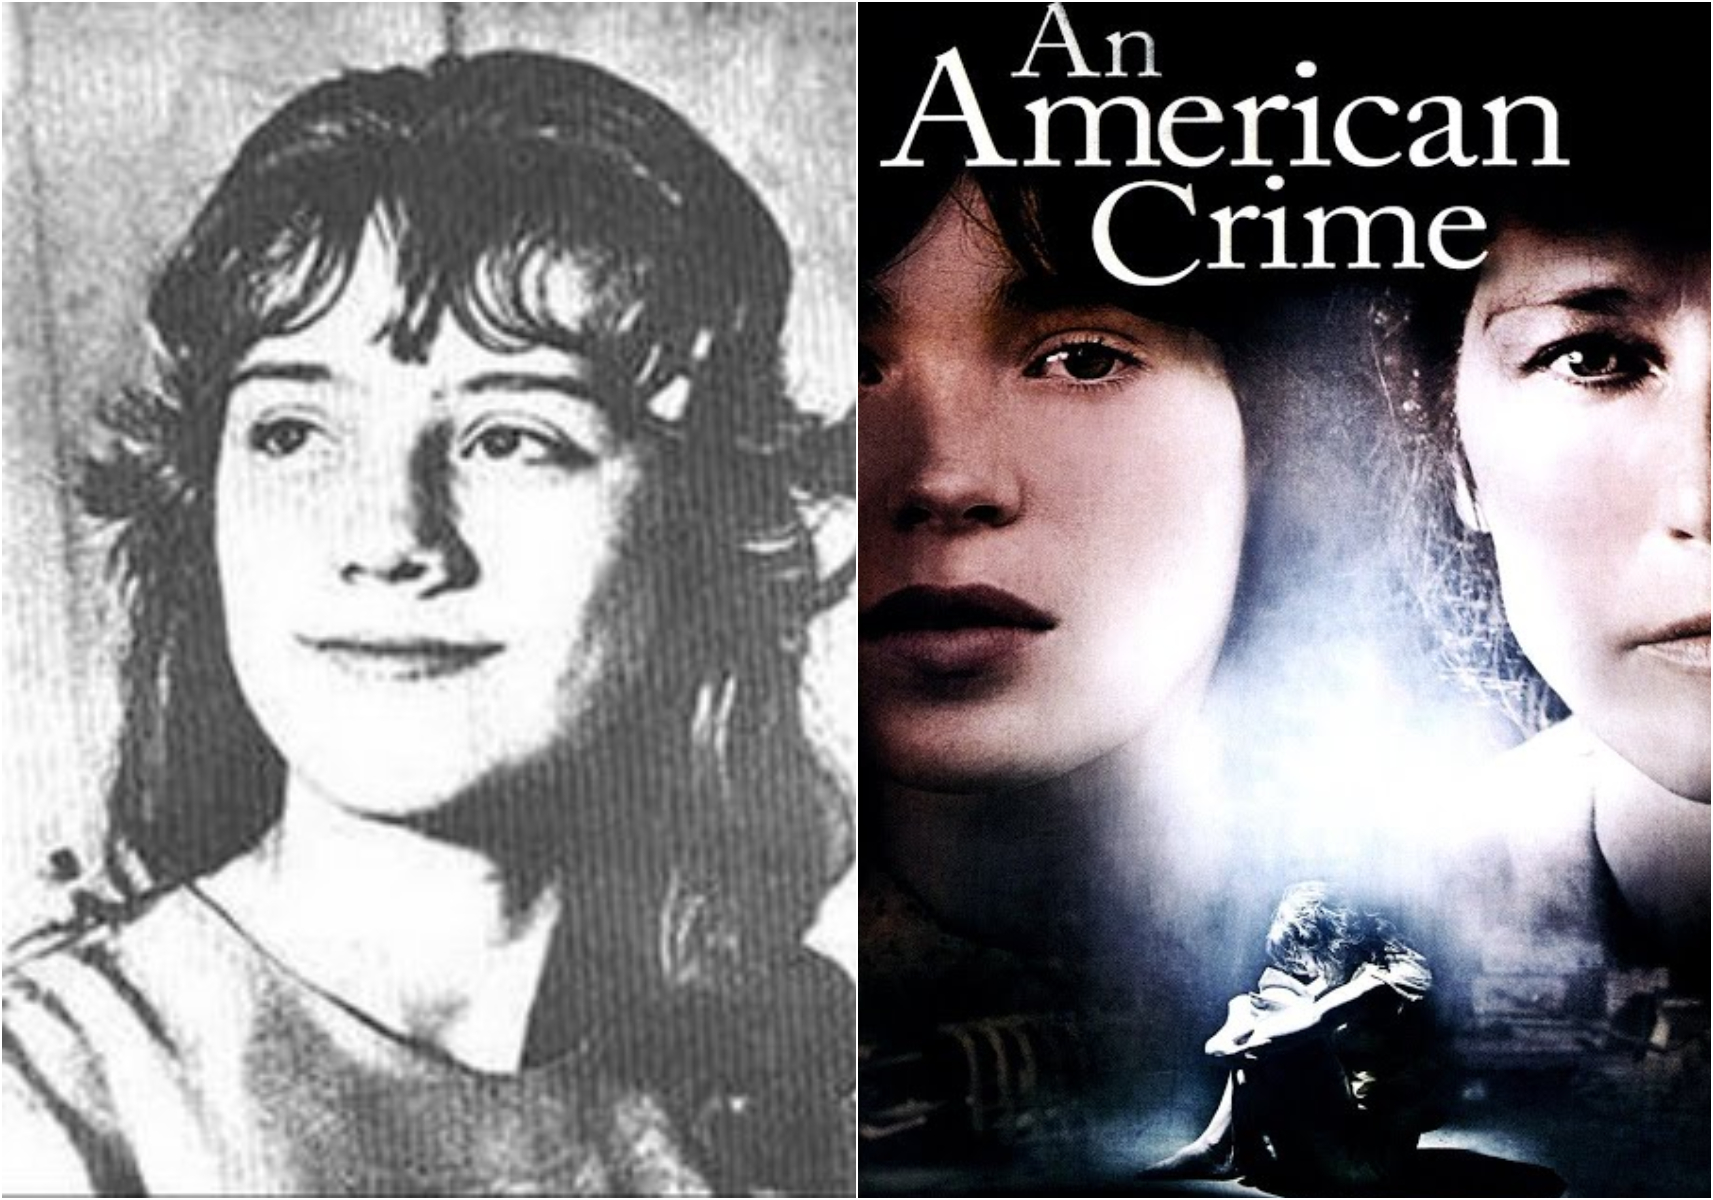 Sylvia Marie Likens: Η τραγική ιστορία πίσω από την αριστουργιματική ταινία “An American Crime”